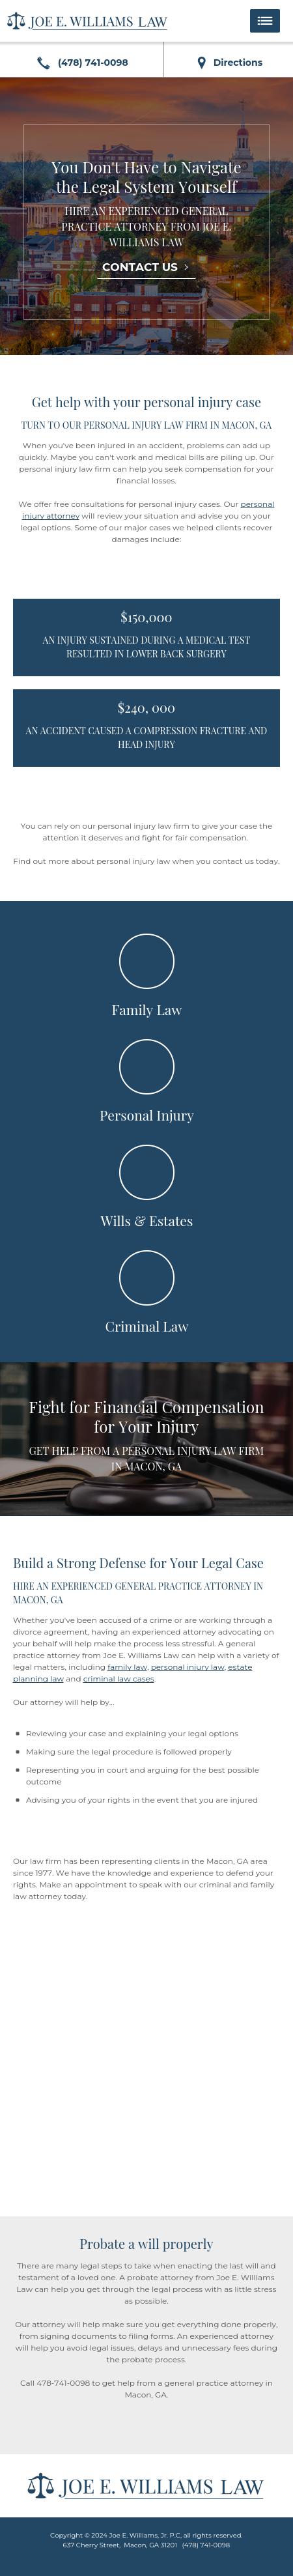 Williams, Joe E Jr - Macon GA Lawyers